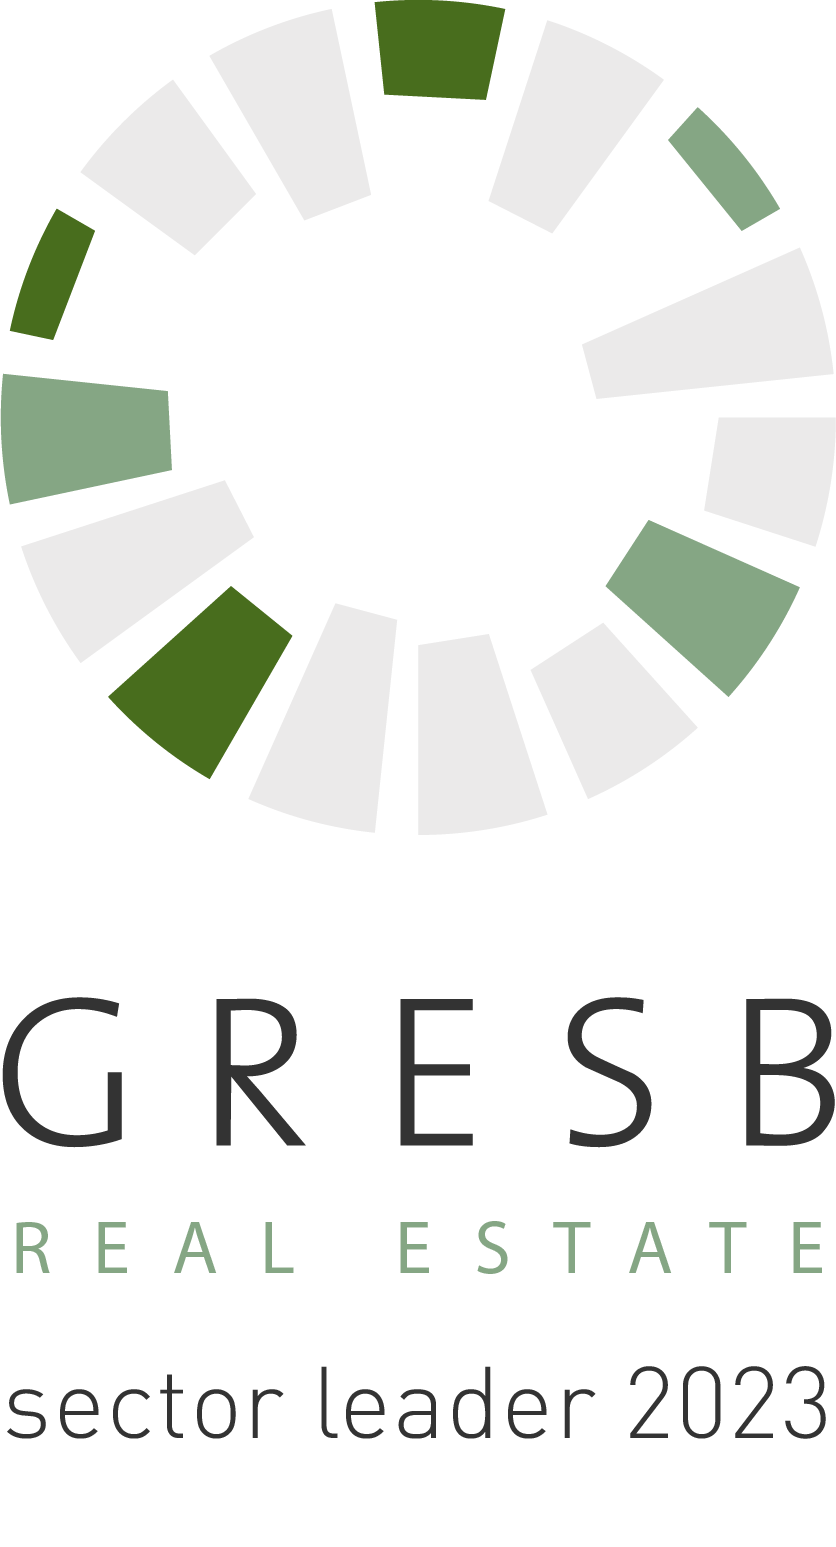 Gresb_Real_Estate_5-2023 webb.png